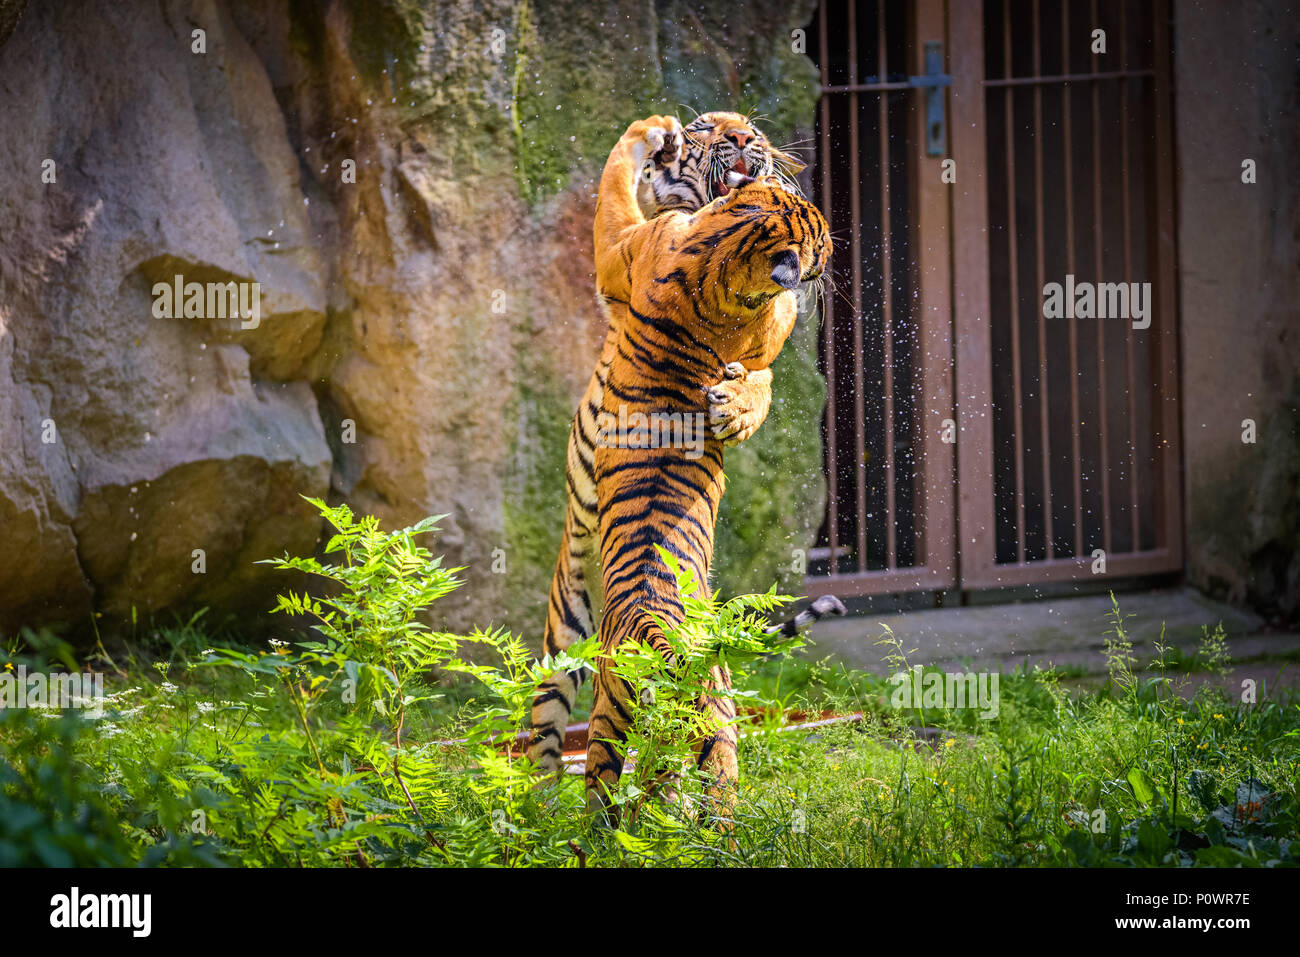 Zwei junge malaiische Tiger kämpfen Stockfoto